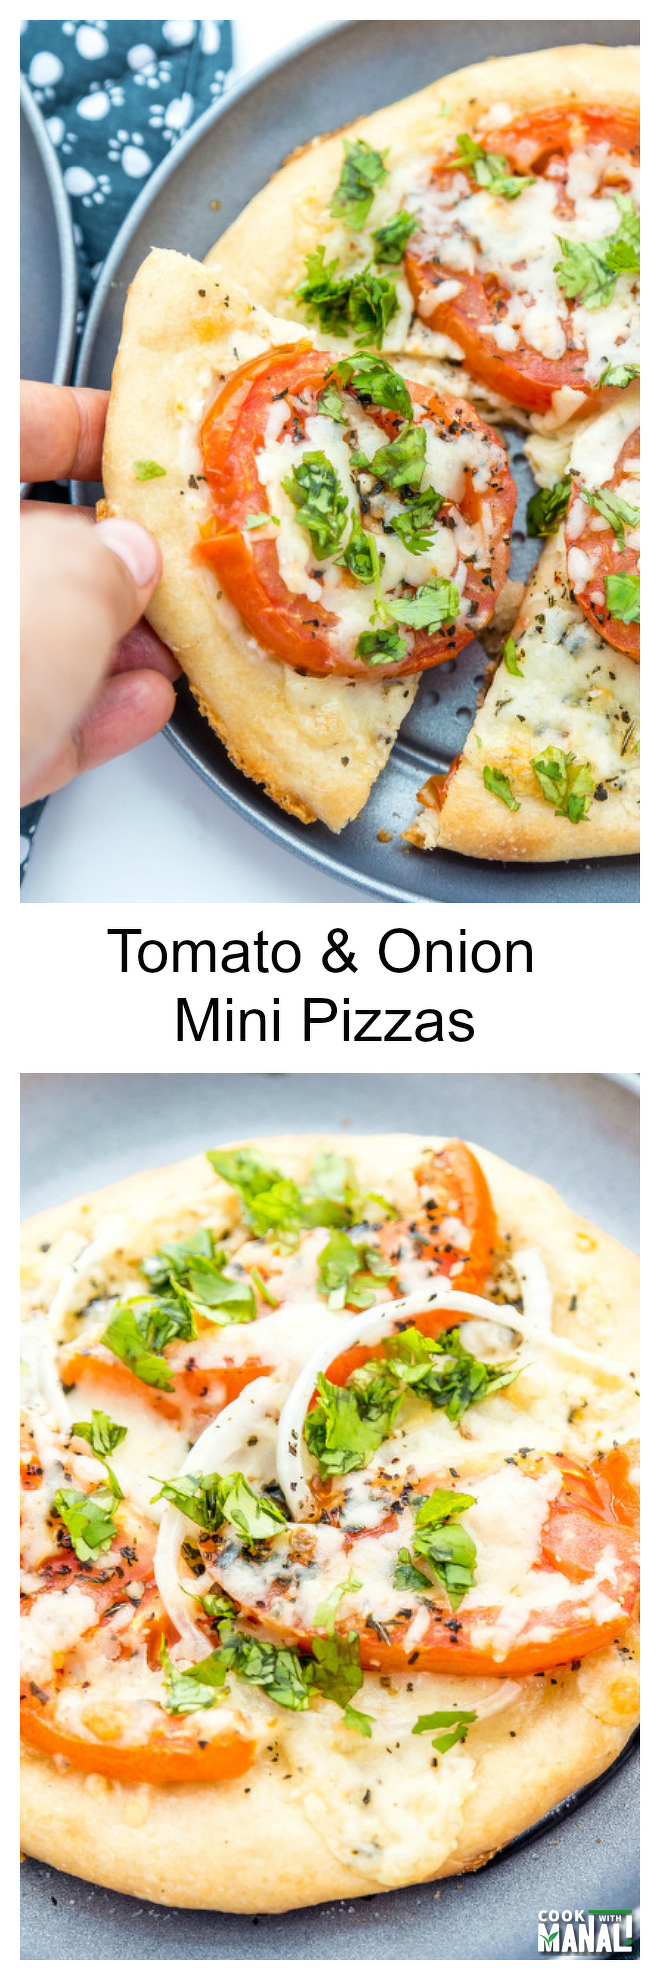 Tomato-Onion-Mini-Pizzas-Collage